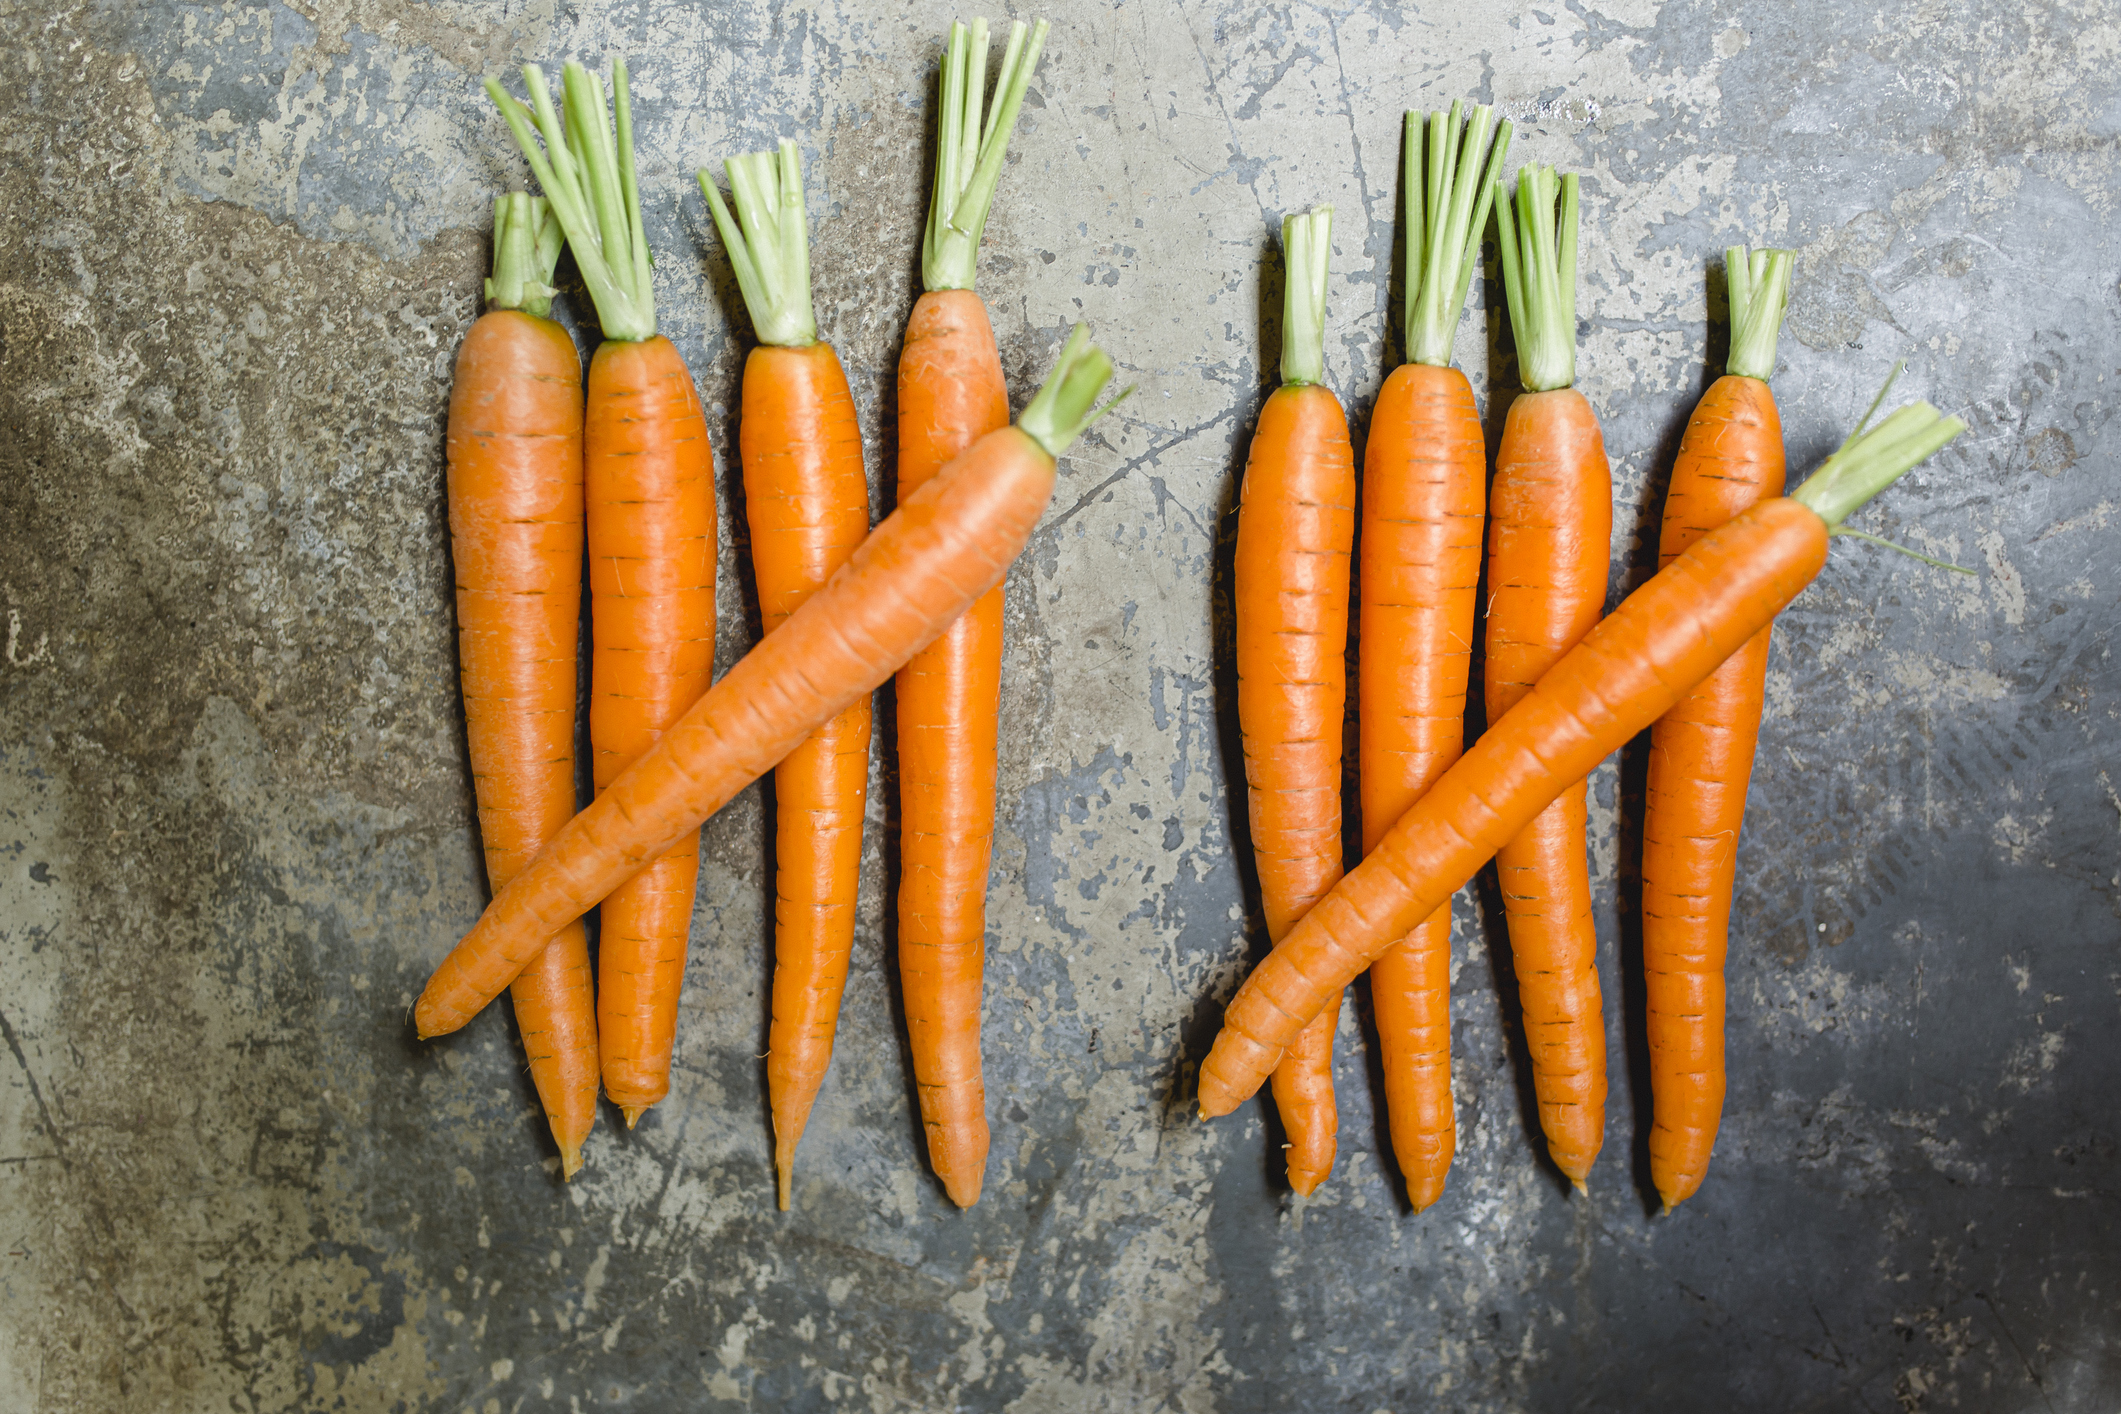 Ten carrots arranged in a tally pattern